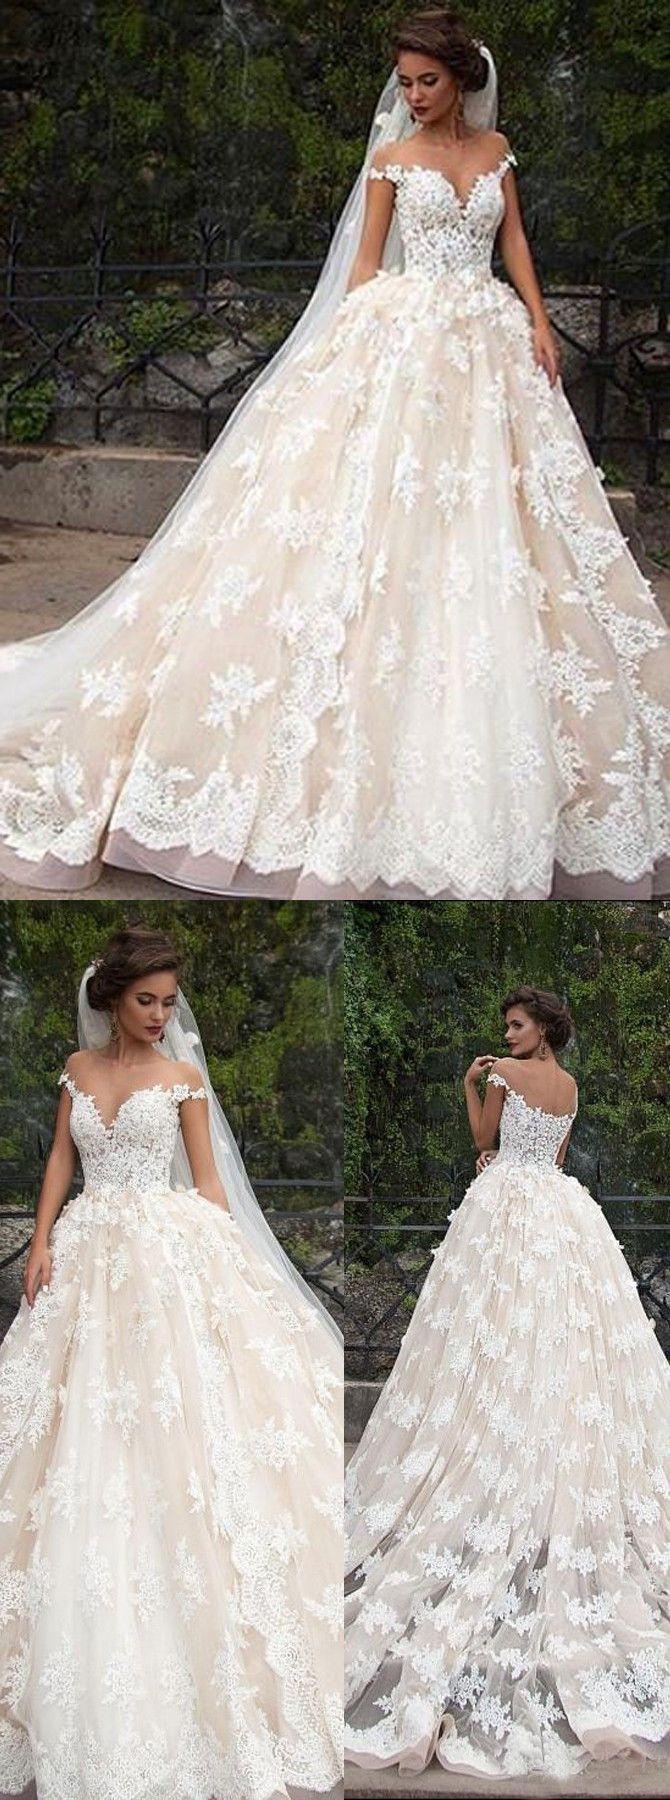 زفاف - Glamorous Jewel Cap Sleeves Court Train Wedding Dress With Lace Top